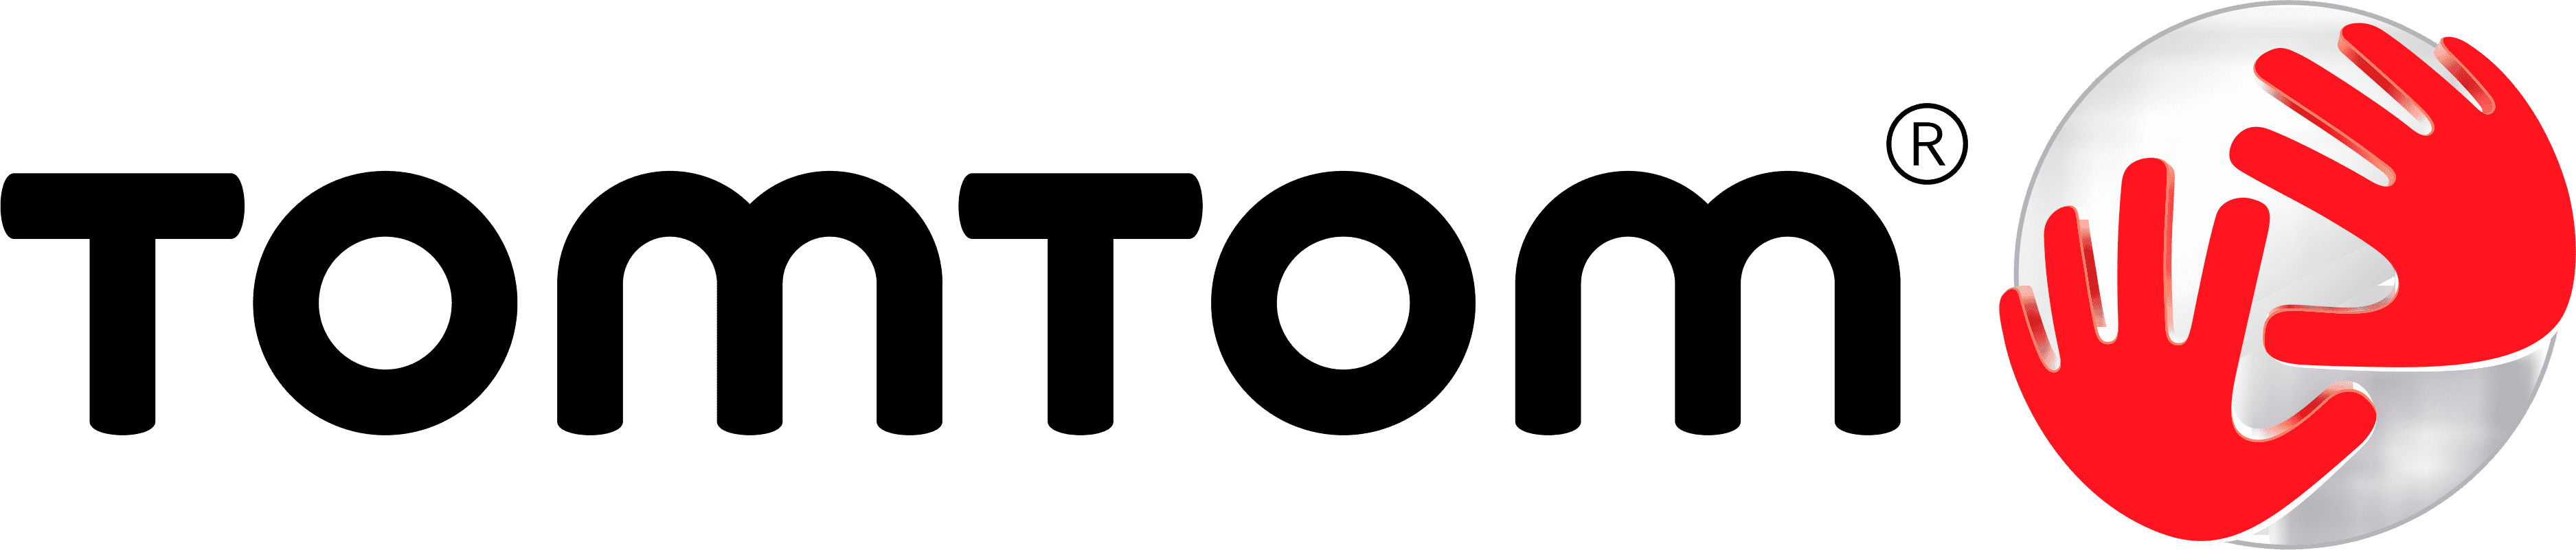 Logo TomTom | TeambuildingGuide - Originele ideeën voor een geslaagde teambuilding